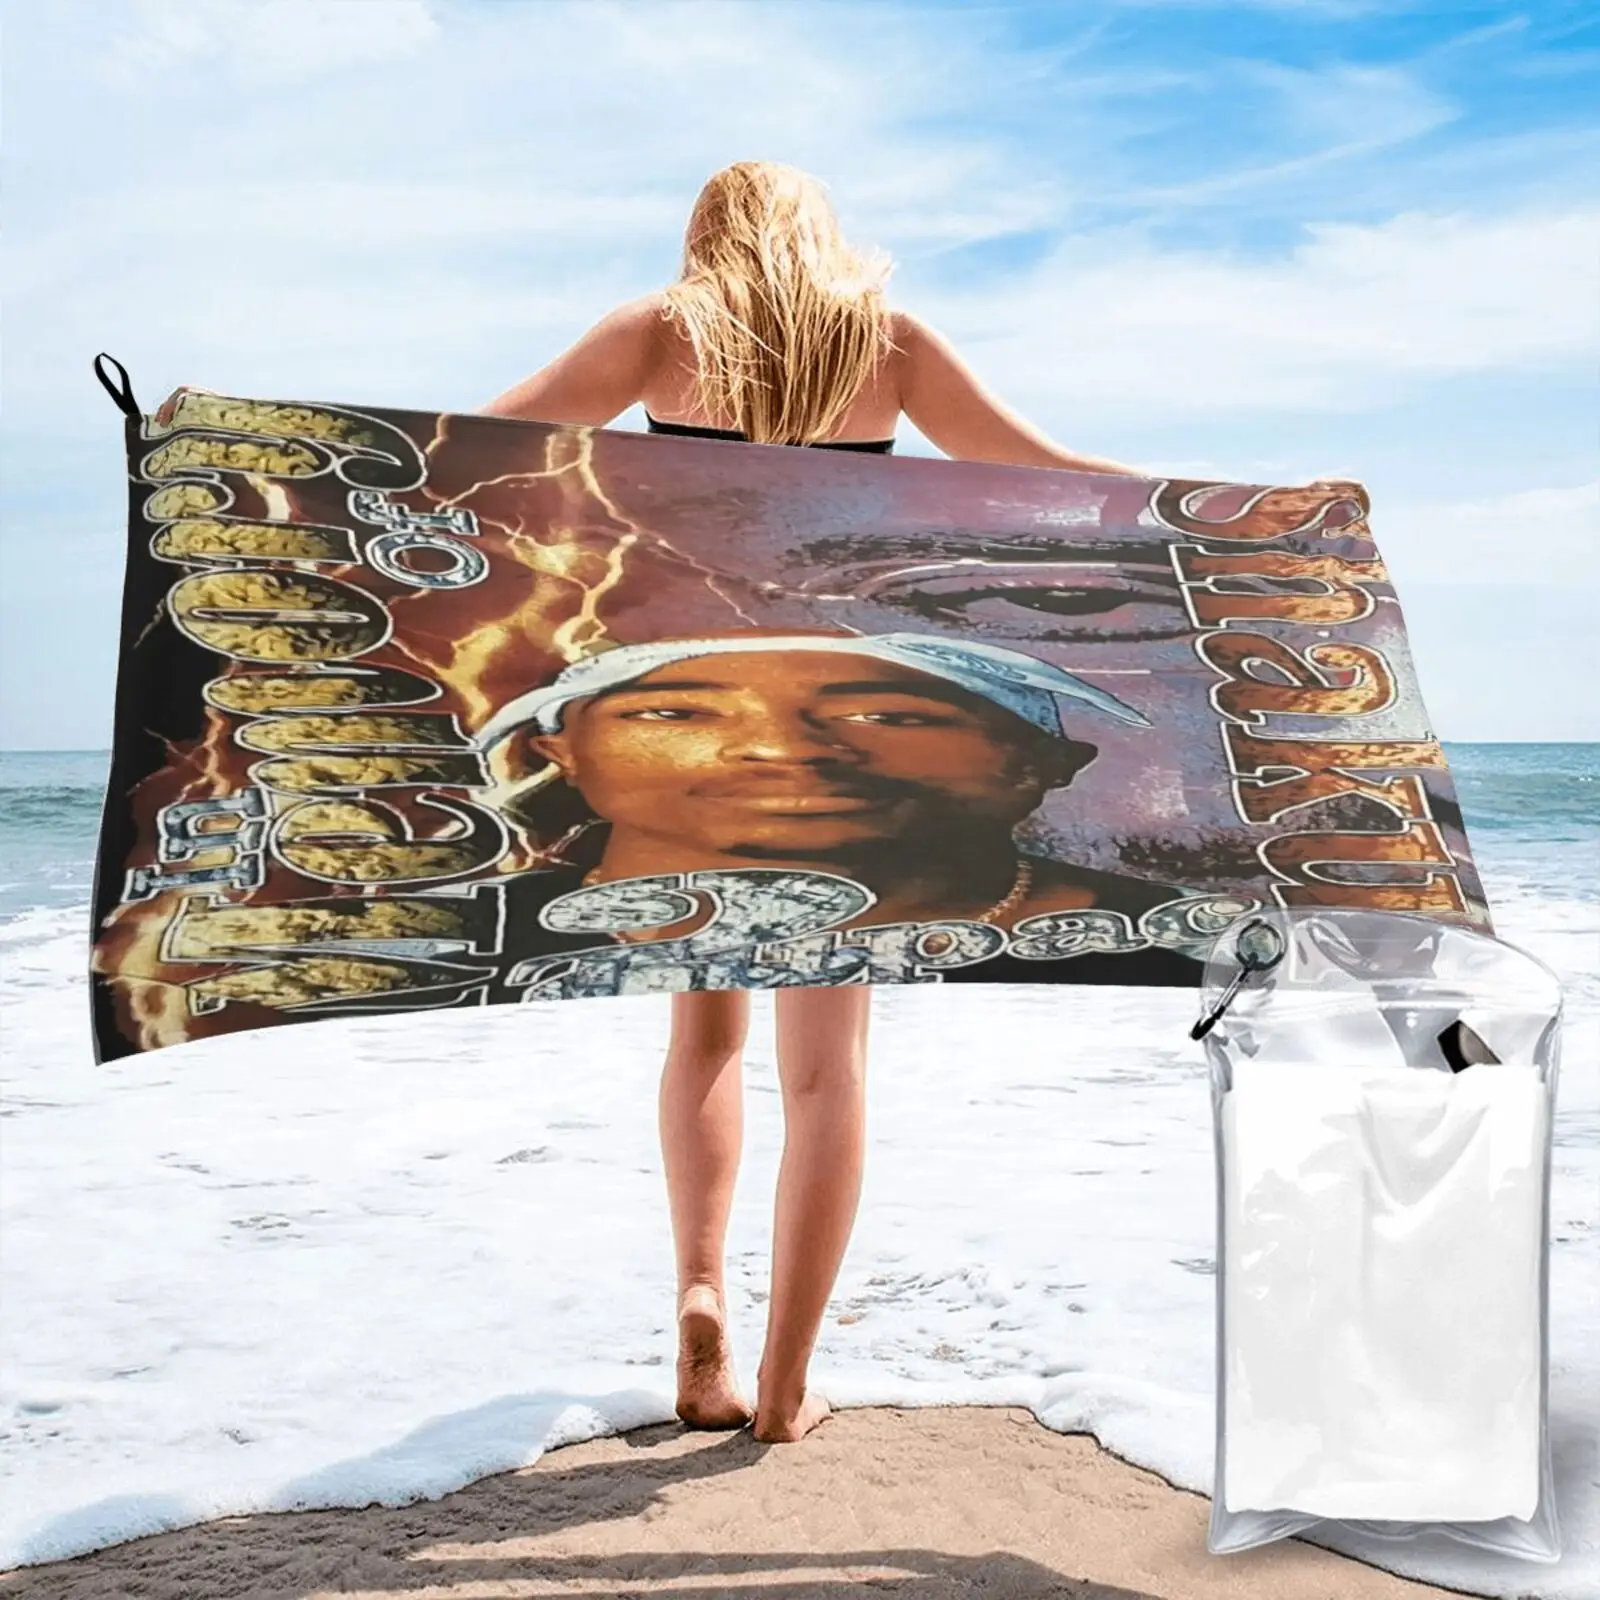 

Tupac Shakur 2Pac Rip Pm25 фильтрующее полотенце для дома пляжное одеяло полотенце пляжное полотенце роскошное для пляжа банный халат для женщин